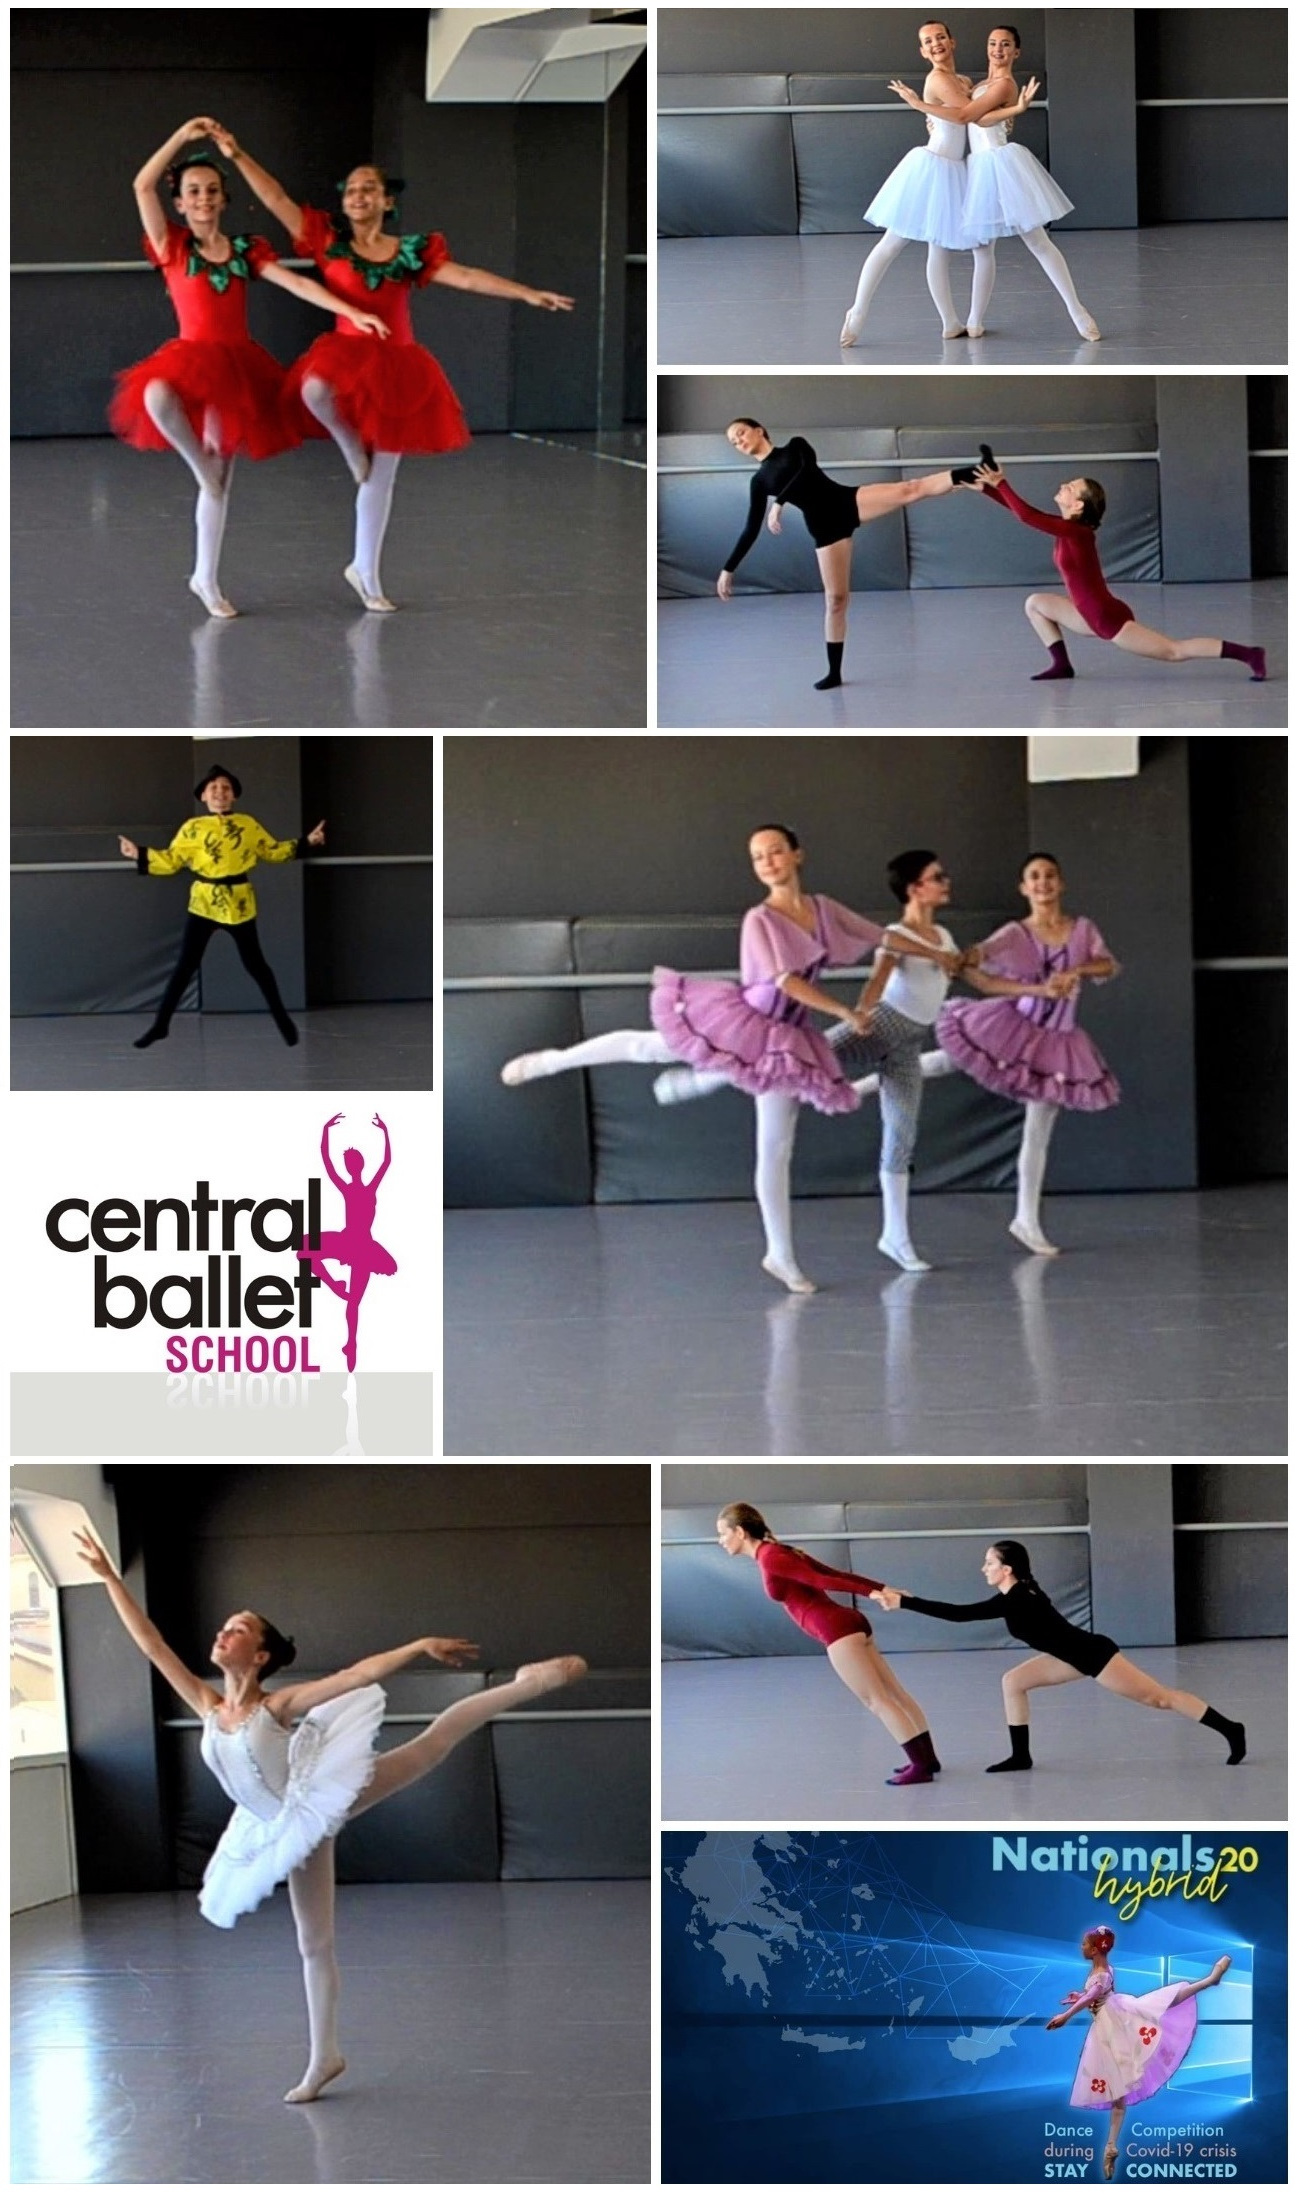 Συμμετοχές Σχολής Χορού Central Ballet στον Πανελλήνιο Διαγωνισμό Κλασικού & Σύγχρονου Χορού NATIONALS20